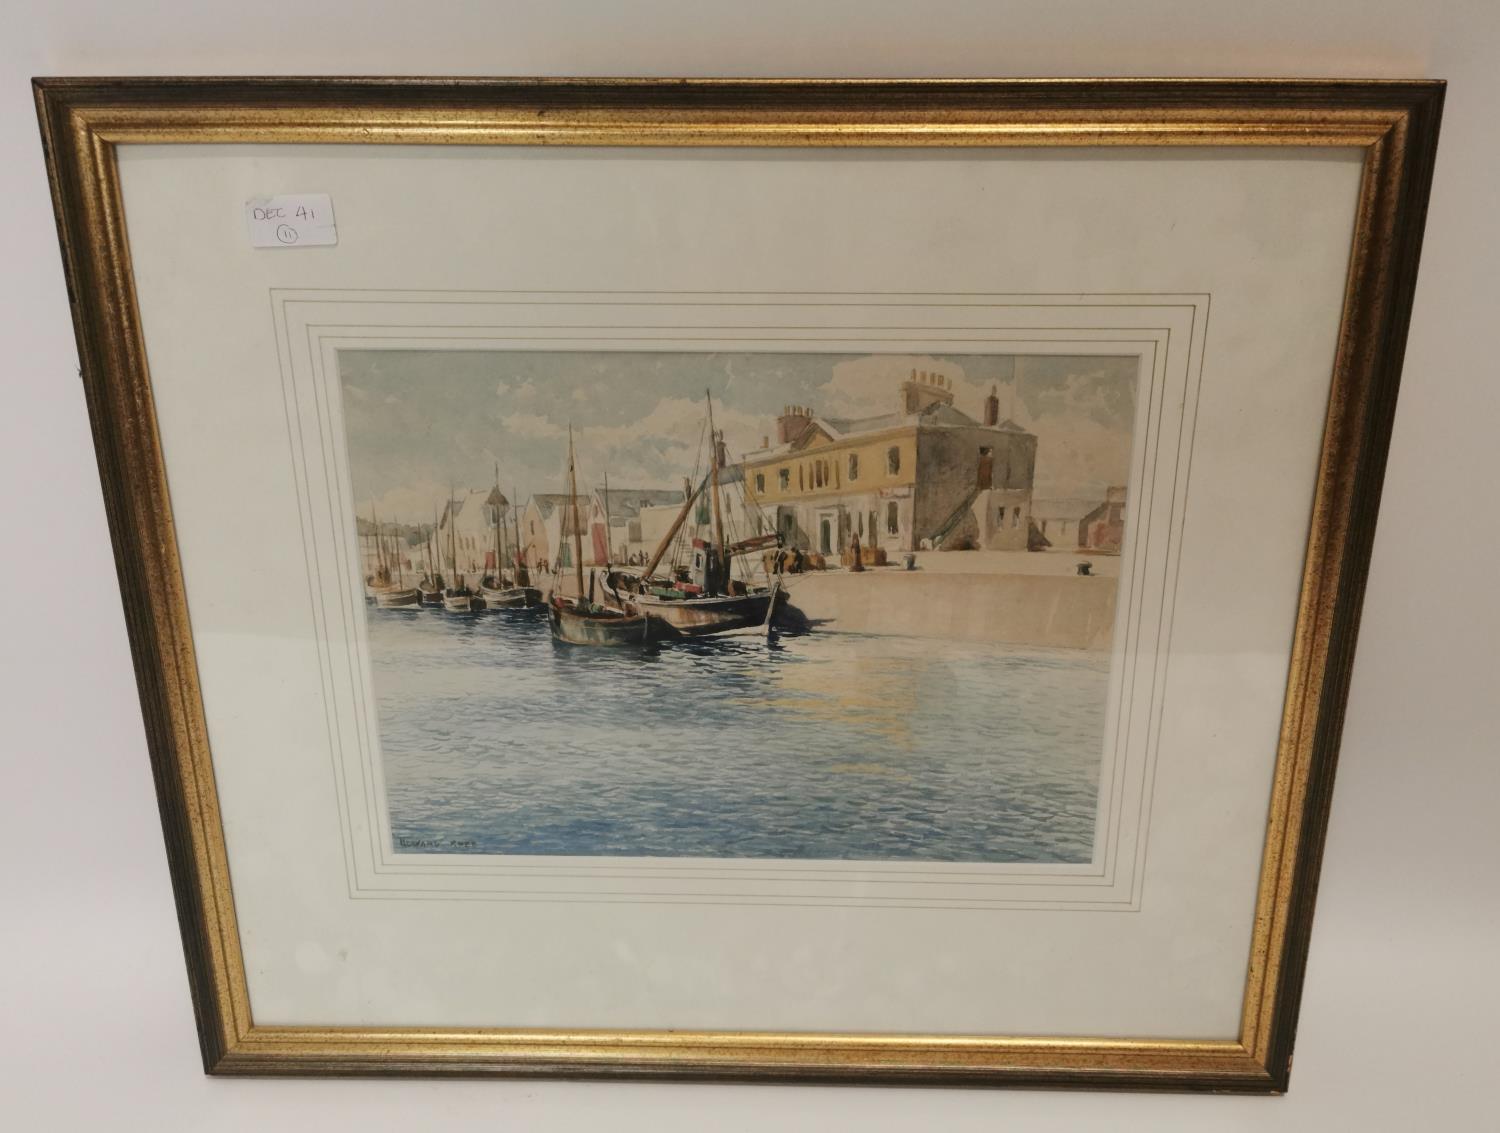 Framed watercolour of Harbour scene.